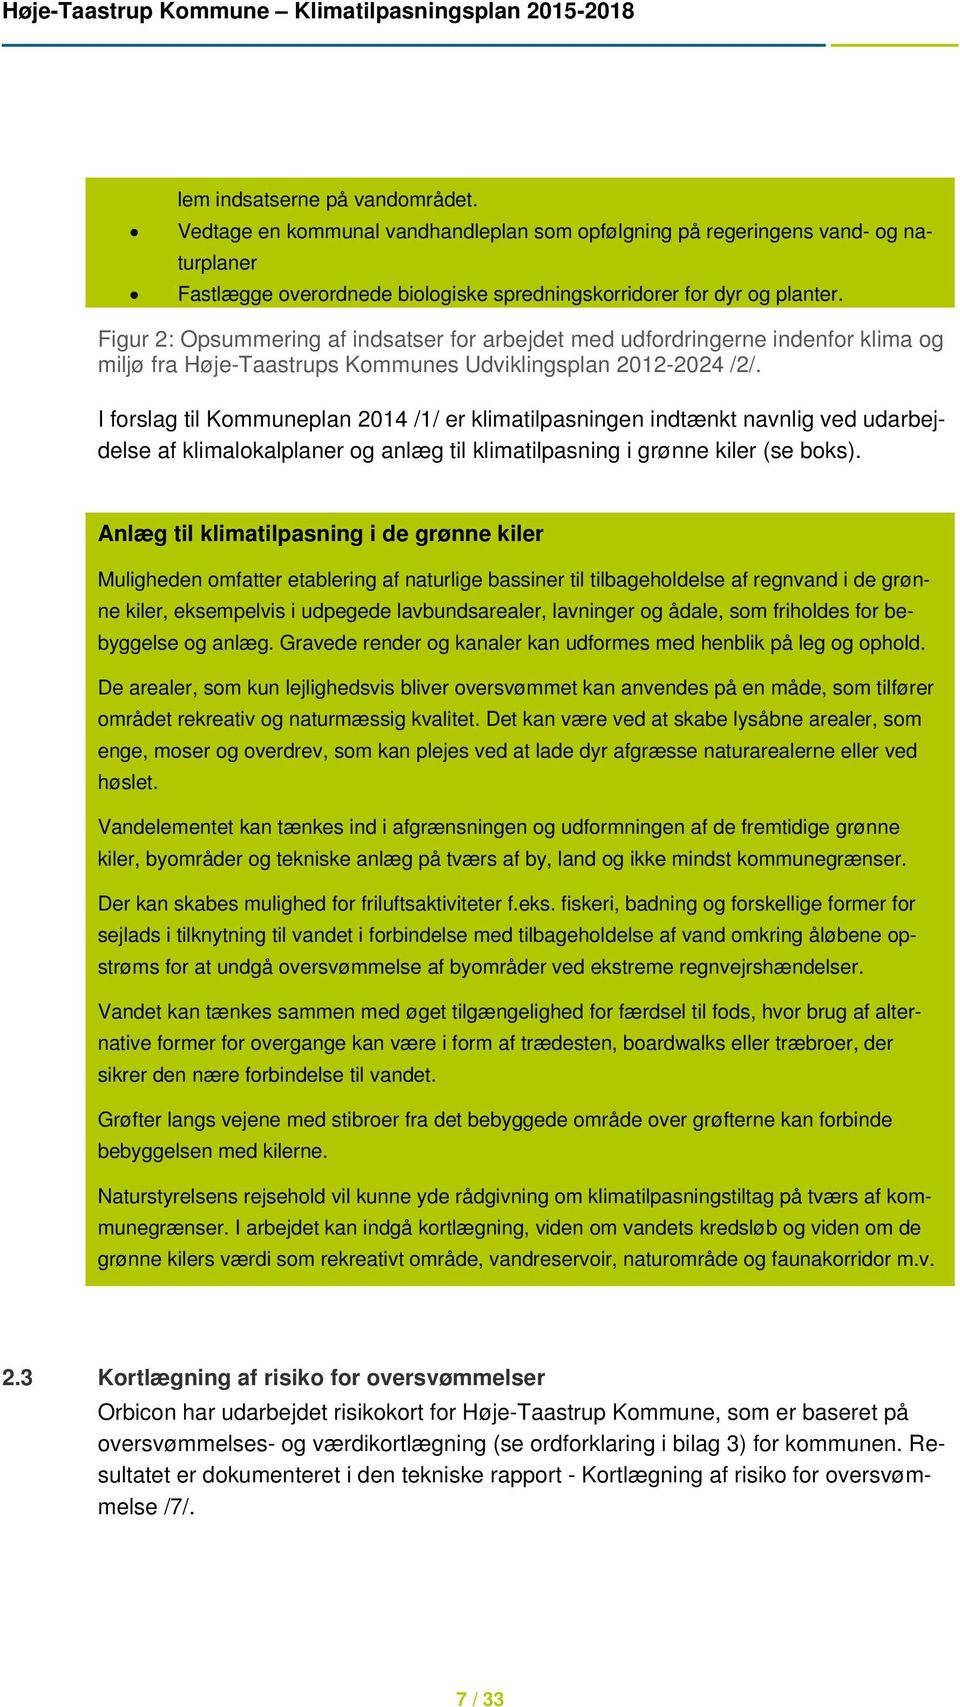 I forslag til Kommuneplan 2014 /1/ er klimatilpasningen indtænkt navnlig ved udarbejdelse af klimalokalplaner og anlæg til klimatilpasning i grønne kiler (se boks).